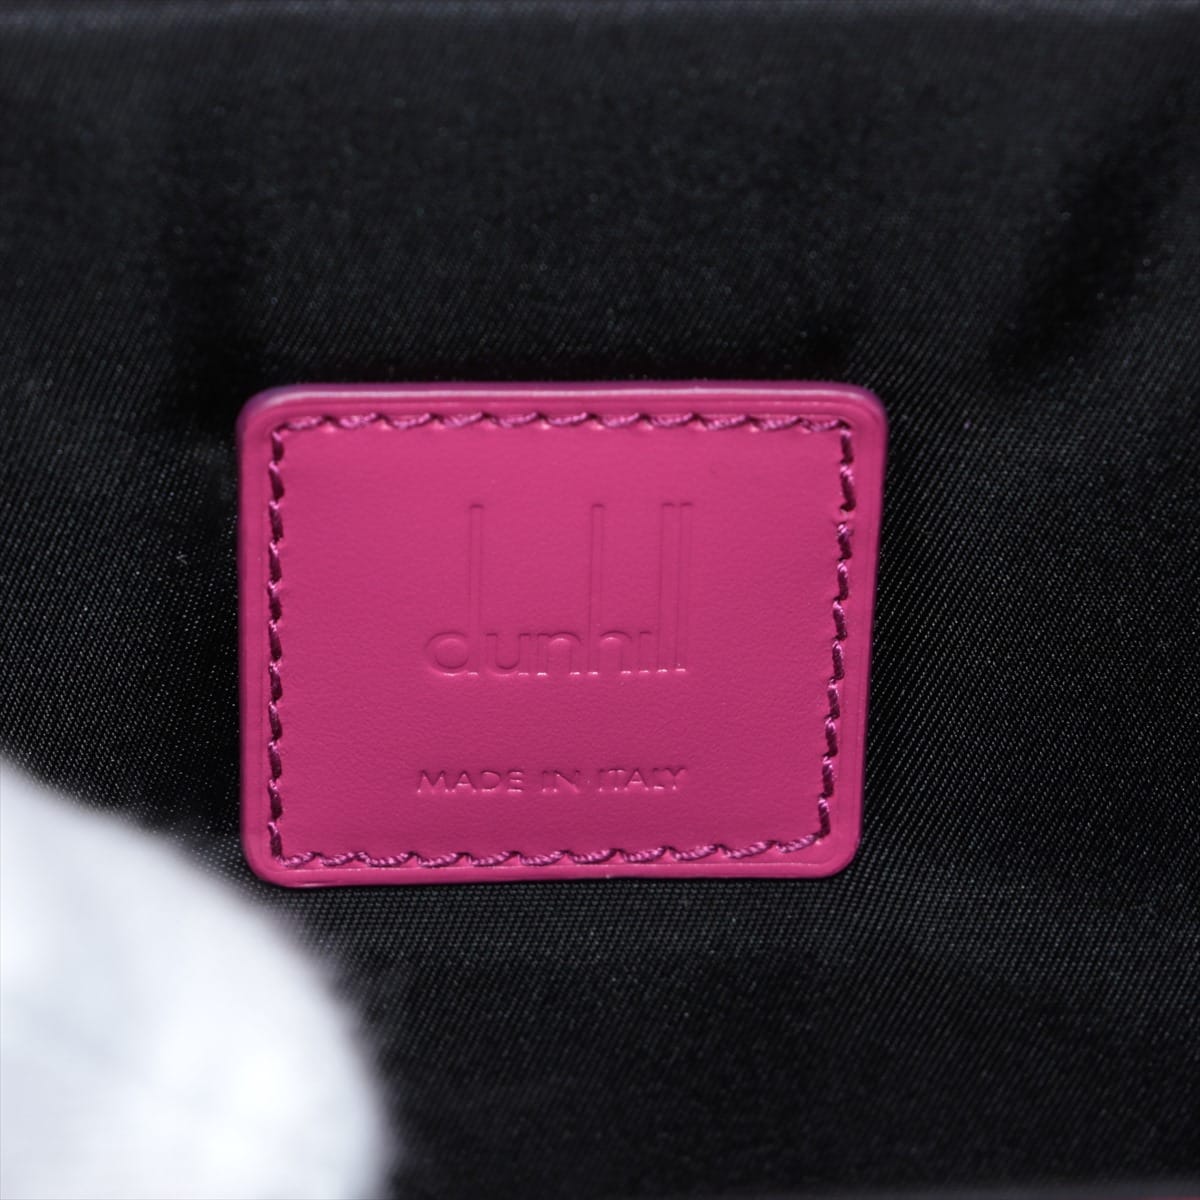 Dunhill GT lock bag Leather Shoulder bag Pink